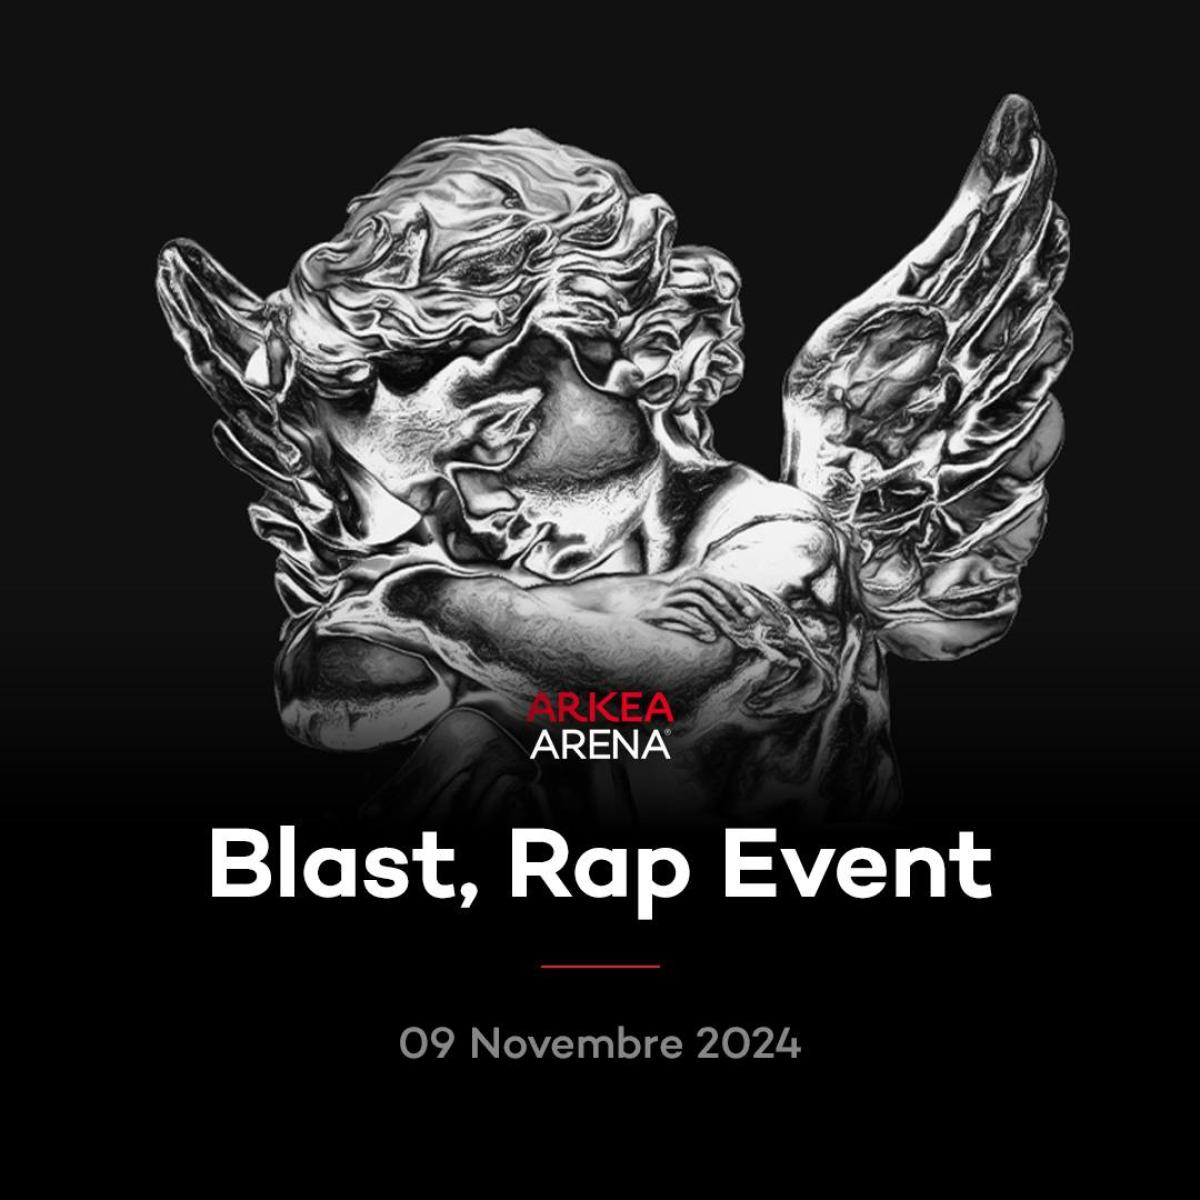 Blast - Rap Event in der Arkea Arena Tickets